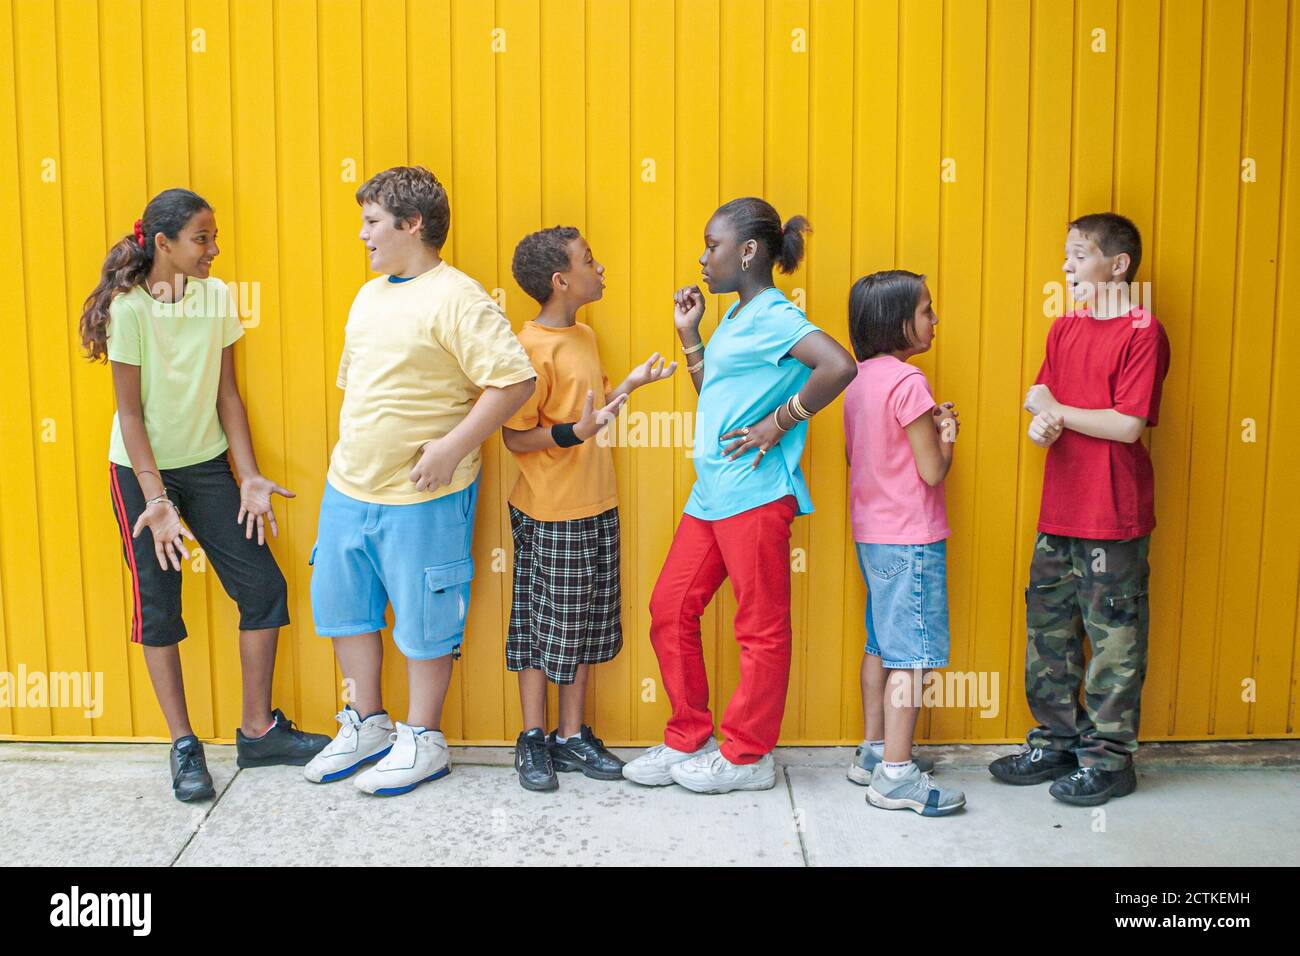 Miami Florida,Non Violence Project USA,Studenten gewaltfreies Verhalten beibringen,Jungen Junge Mädchen Girlss Gruppe posiert reden sprechen,Hispanic Bl Stockfoto